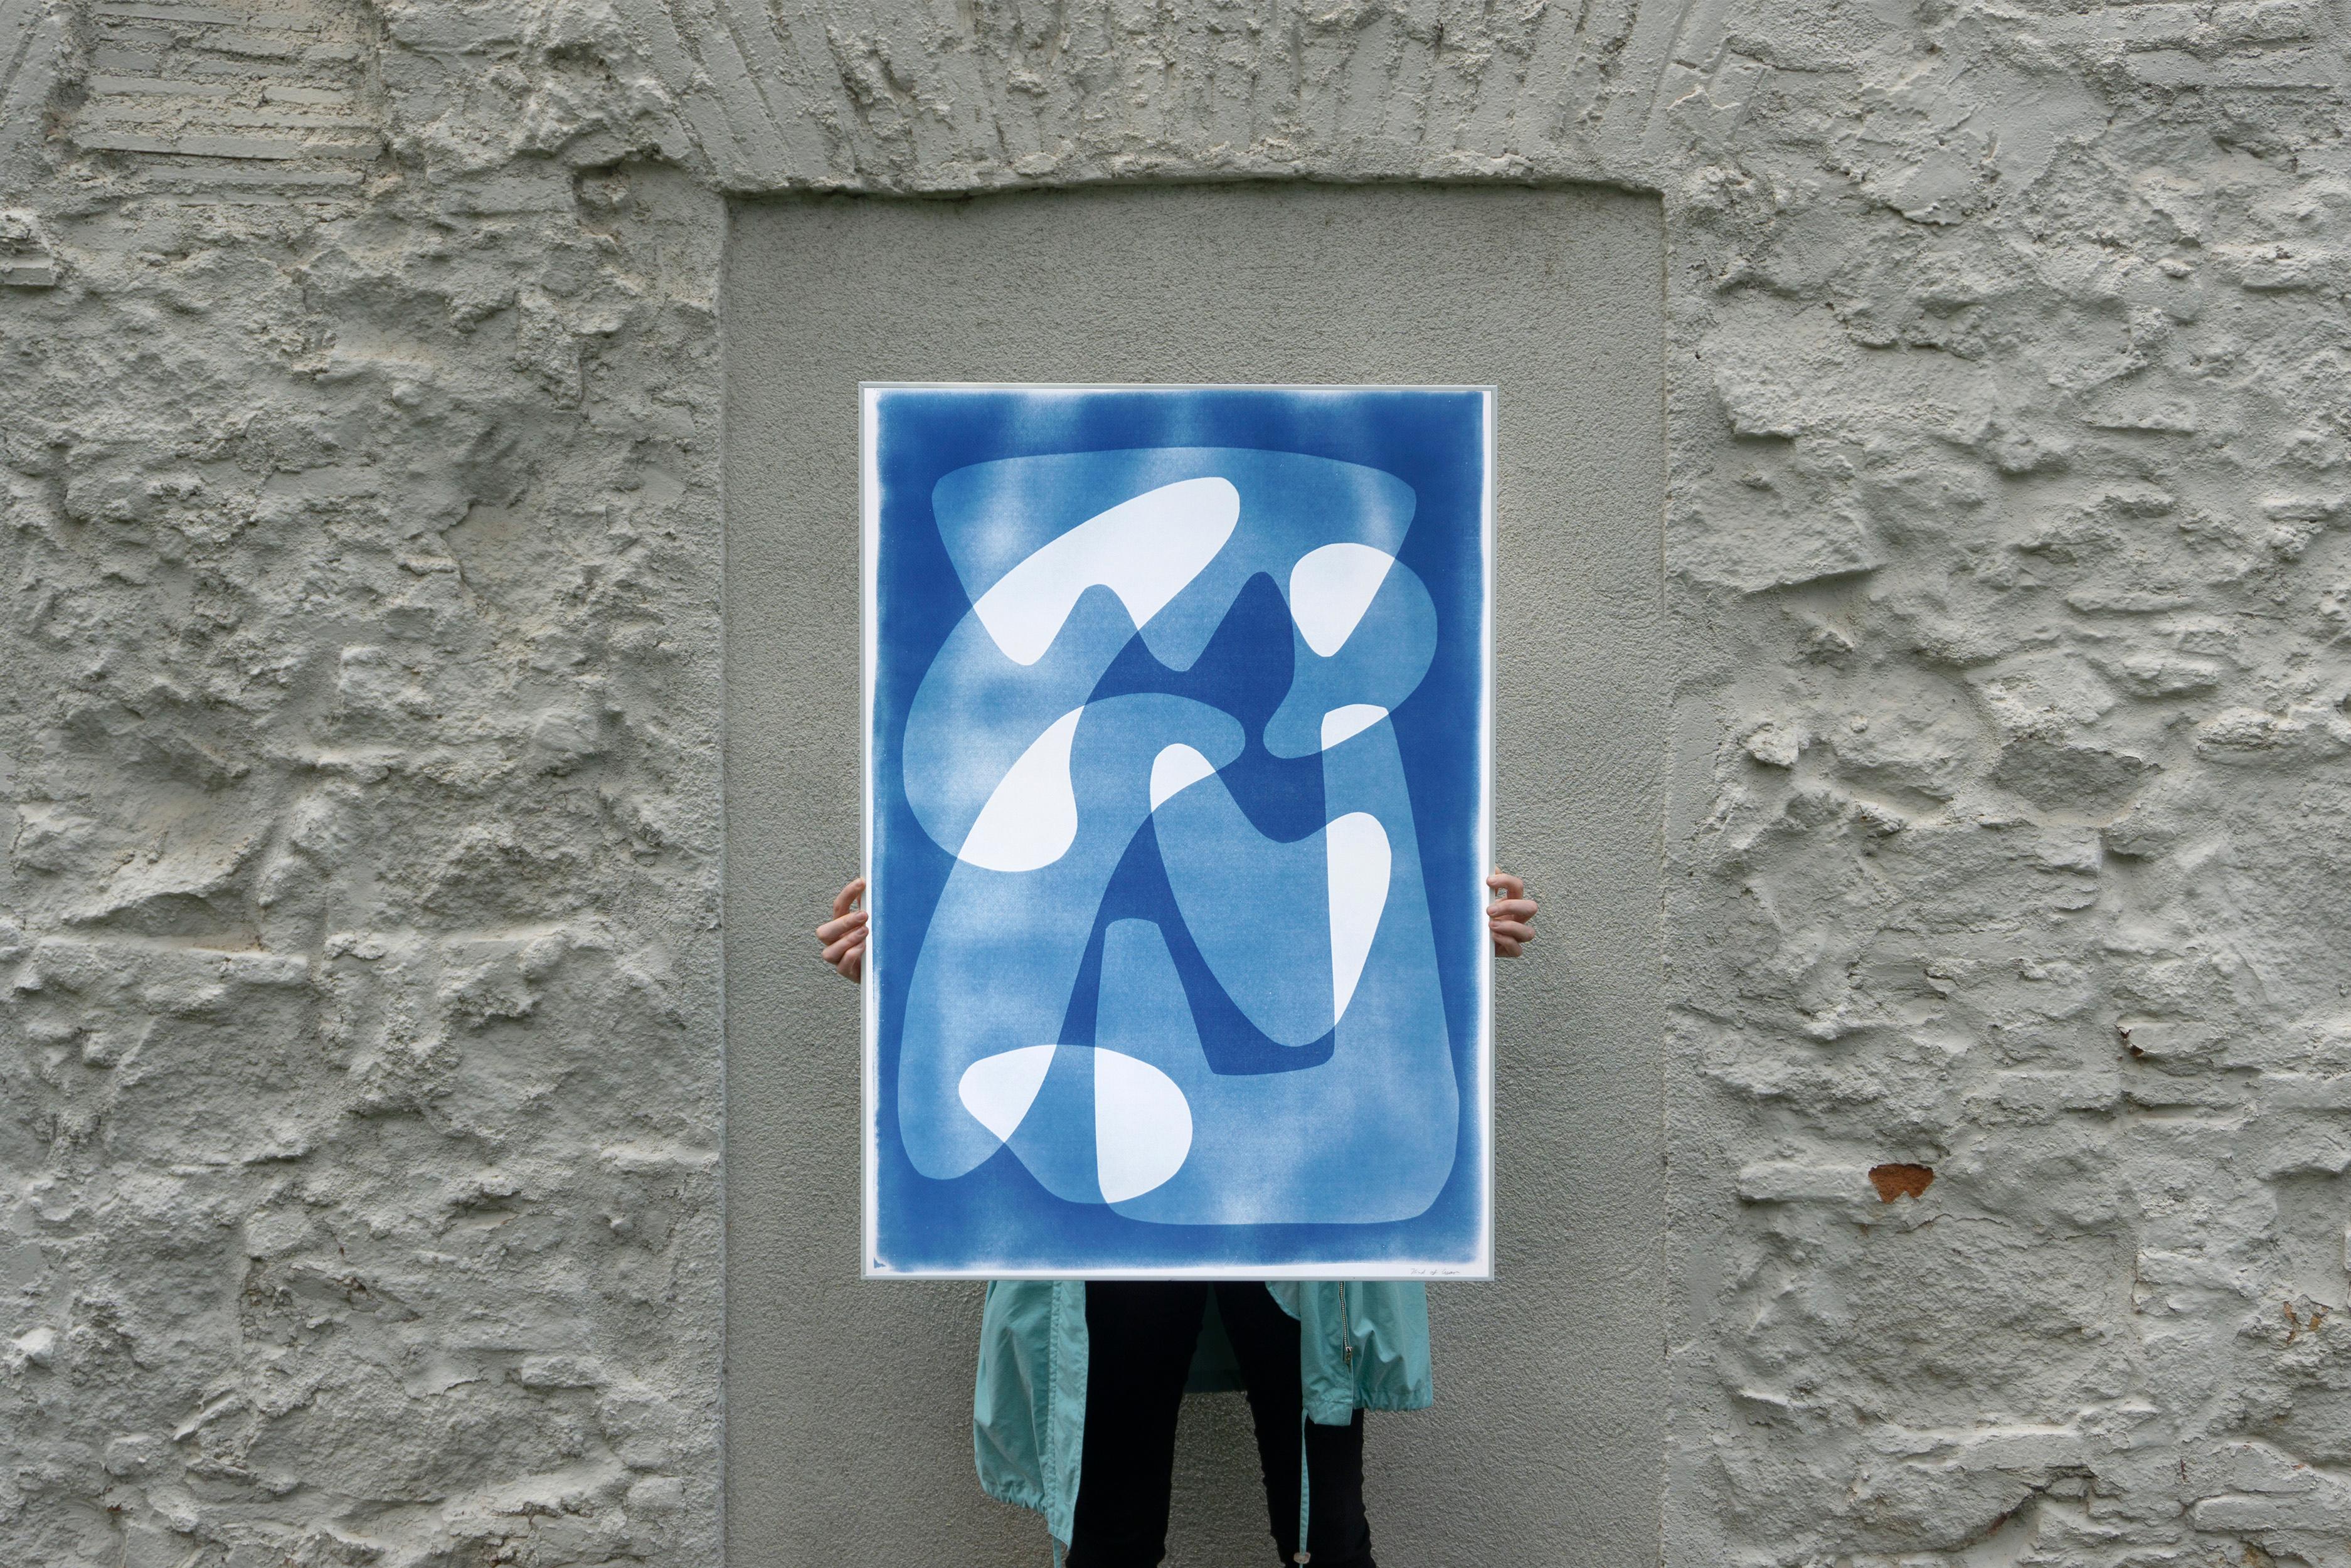 Des palettes flottantes modernes à motif blanc et bleu, cyanotype unique  - Print de Kind of Cyan